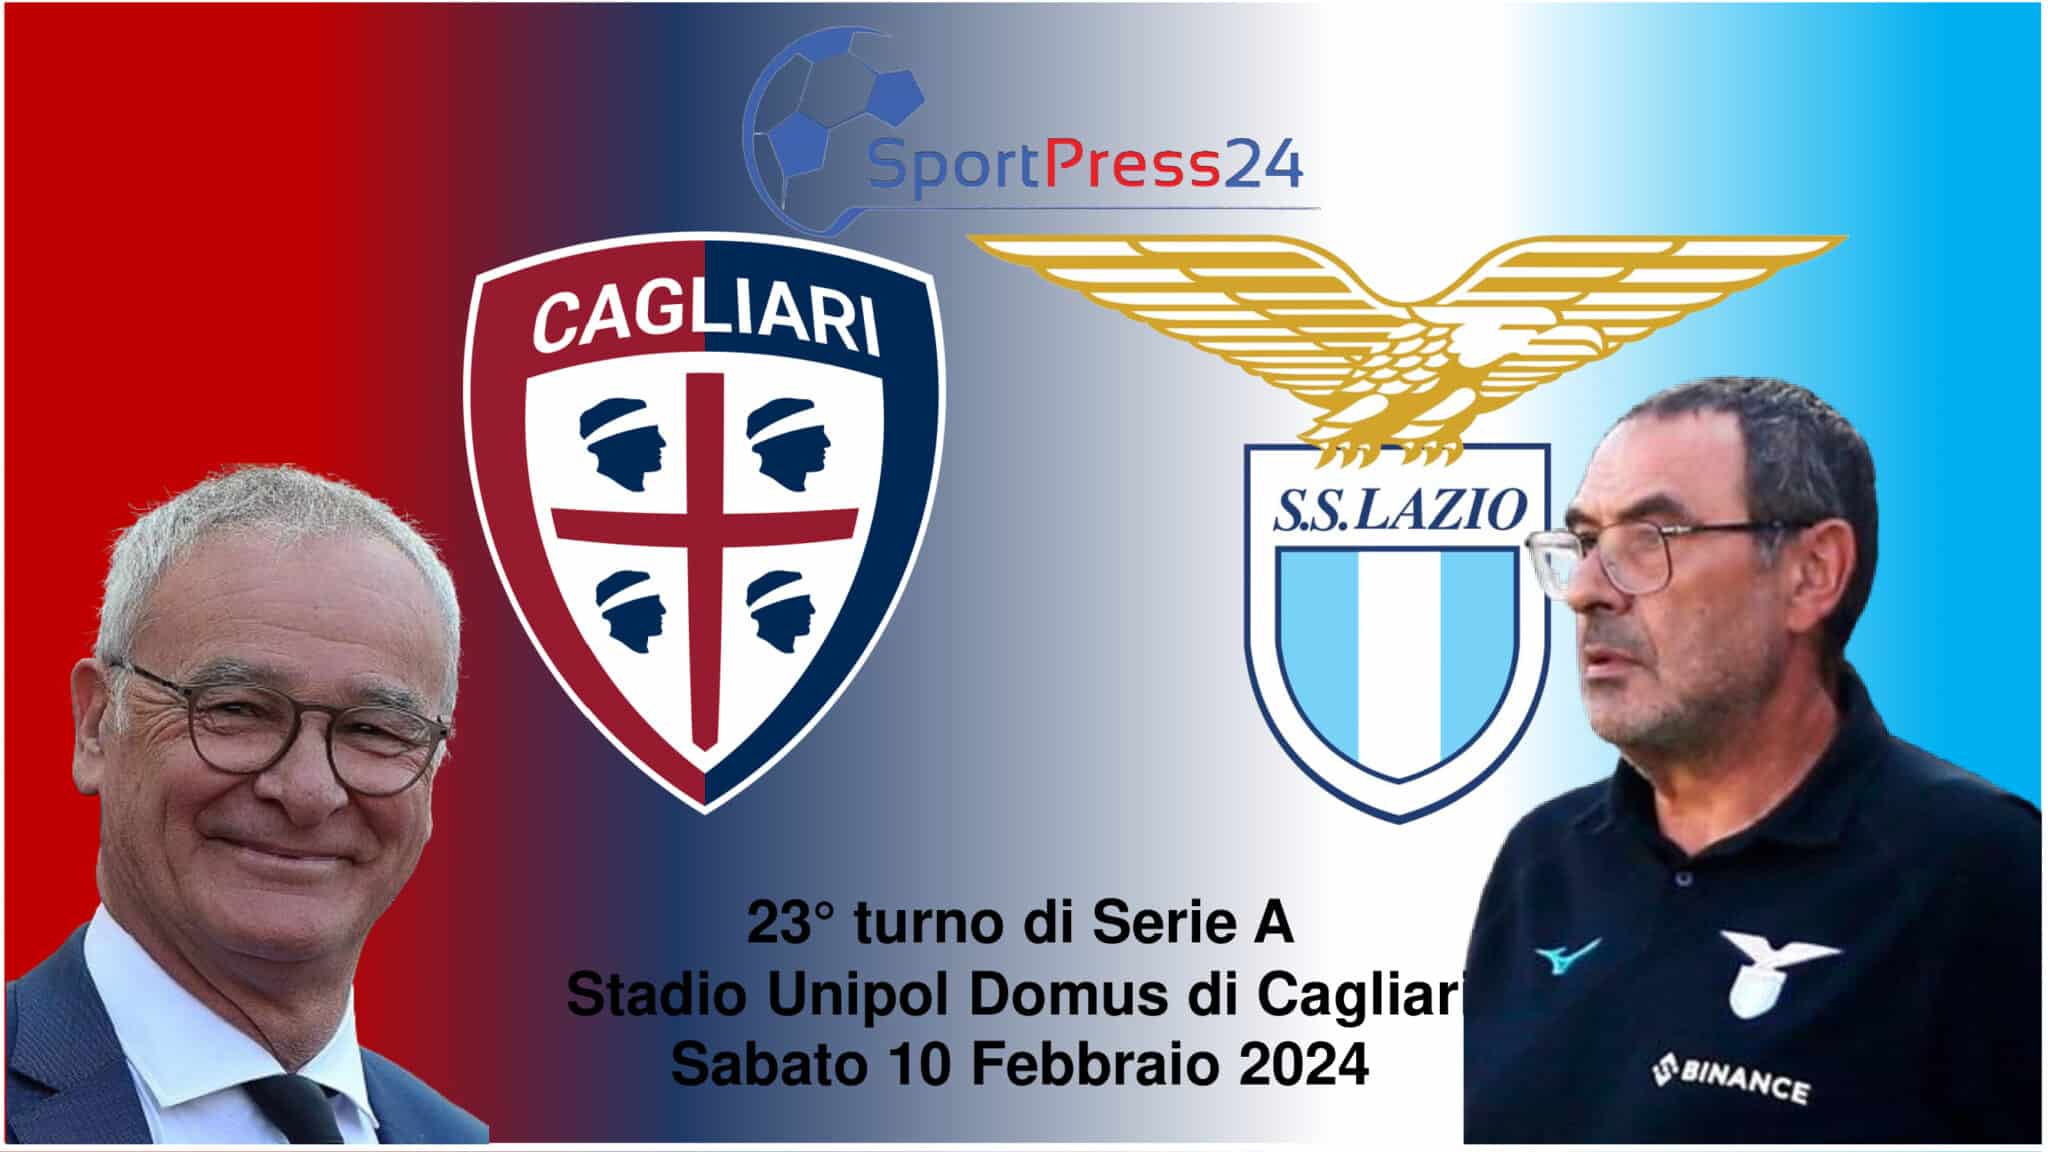 Le formazioni ufficiali di Cagliari - Lazio (Immagine a cura di Orazio Bellinghieri)